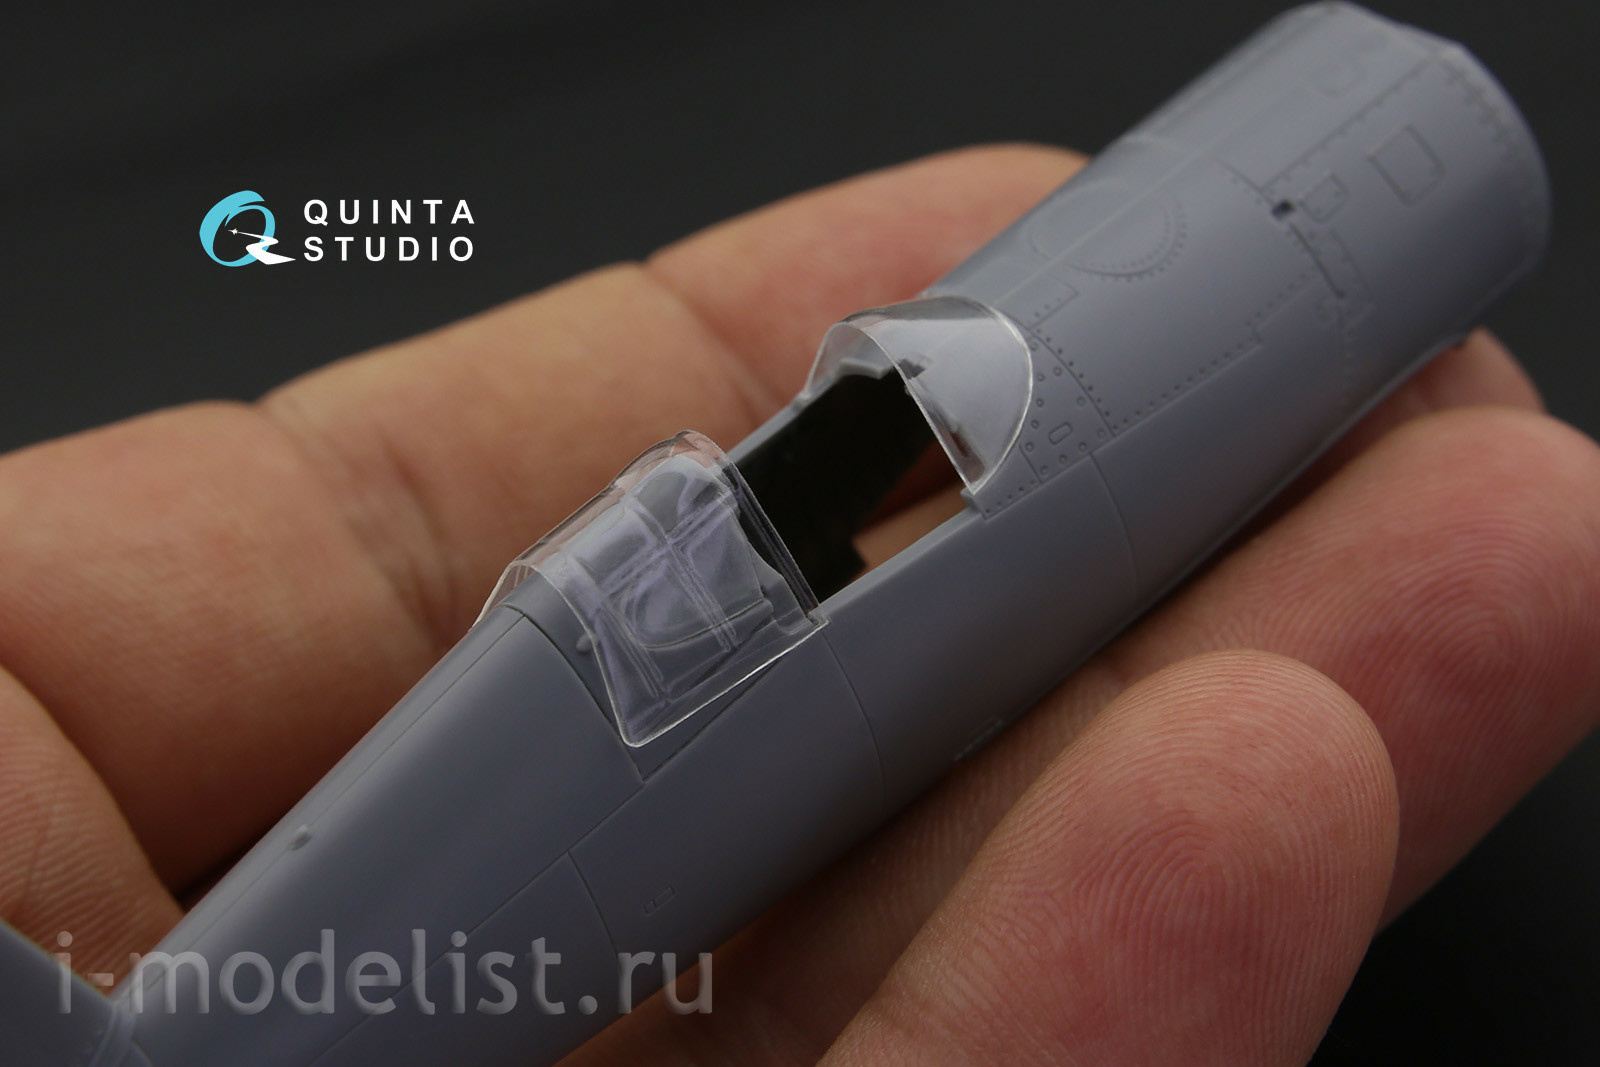 QC72023 Quinta Studio 1/72 Набор остекления для модели F4U-1 Corsair (Bird cage) (для модели Tamiya)